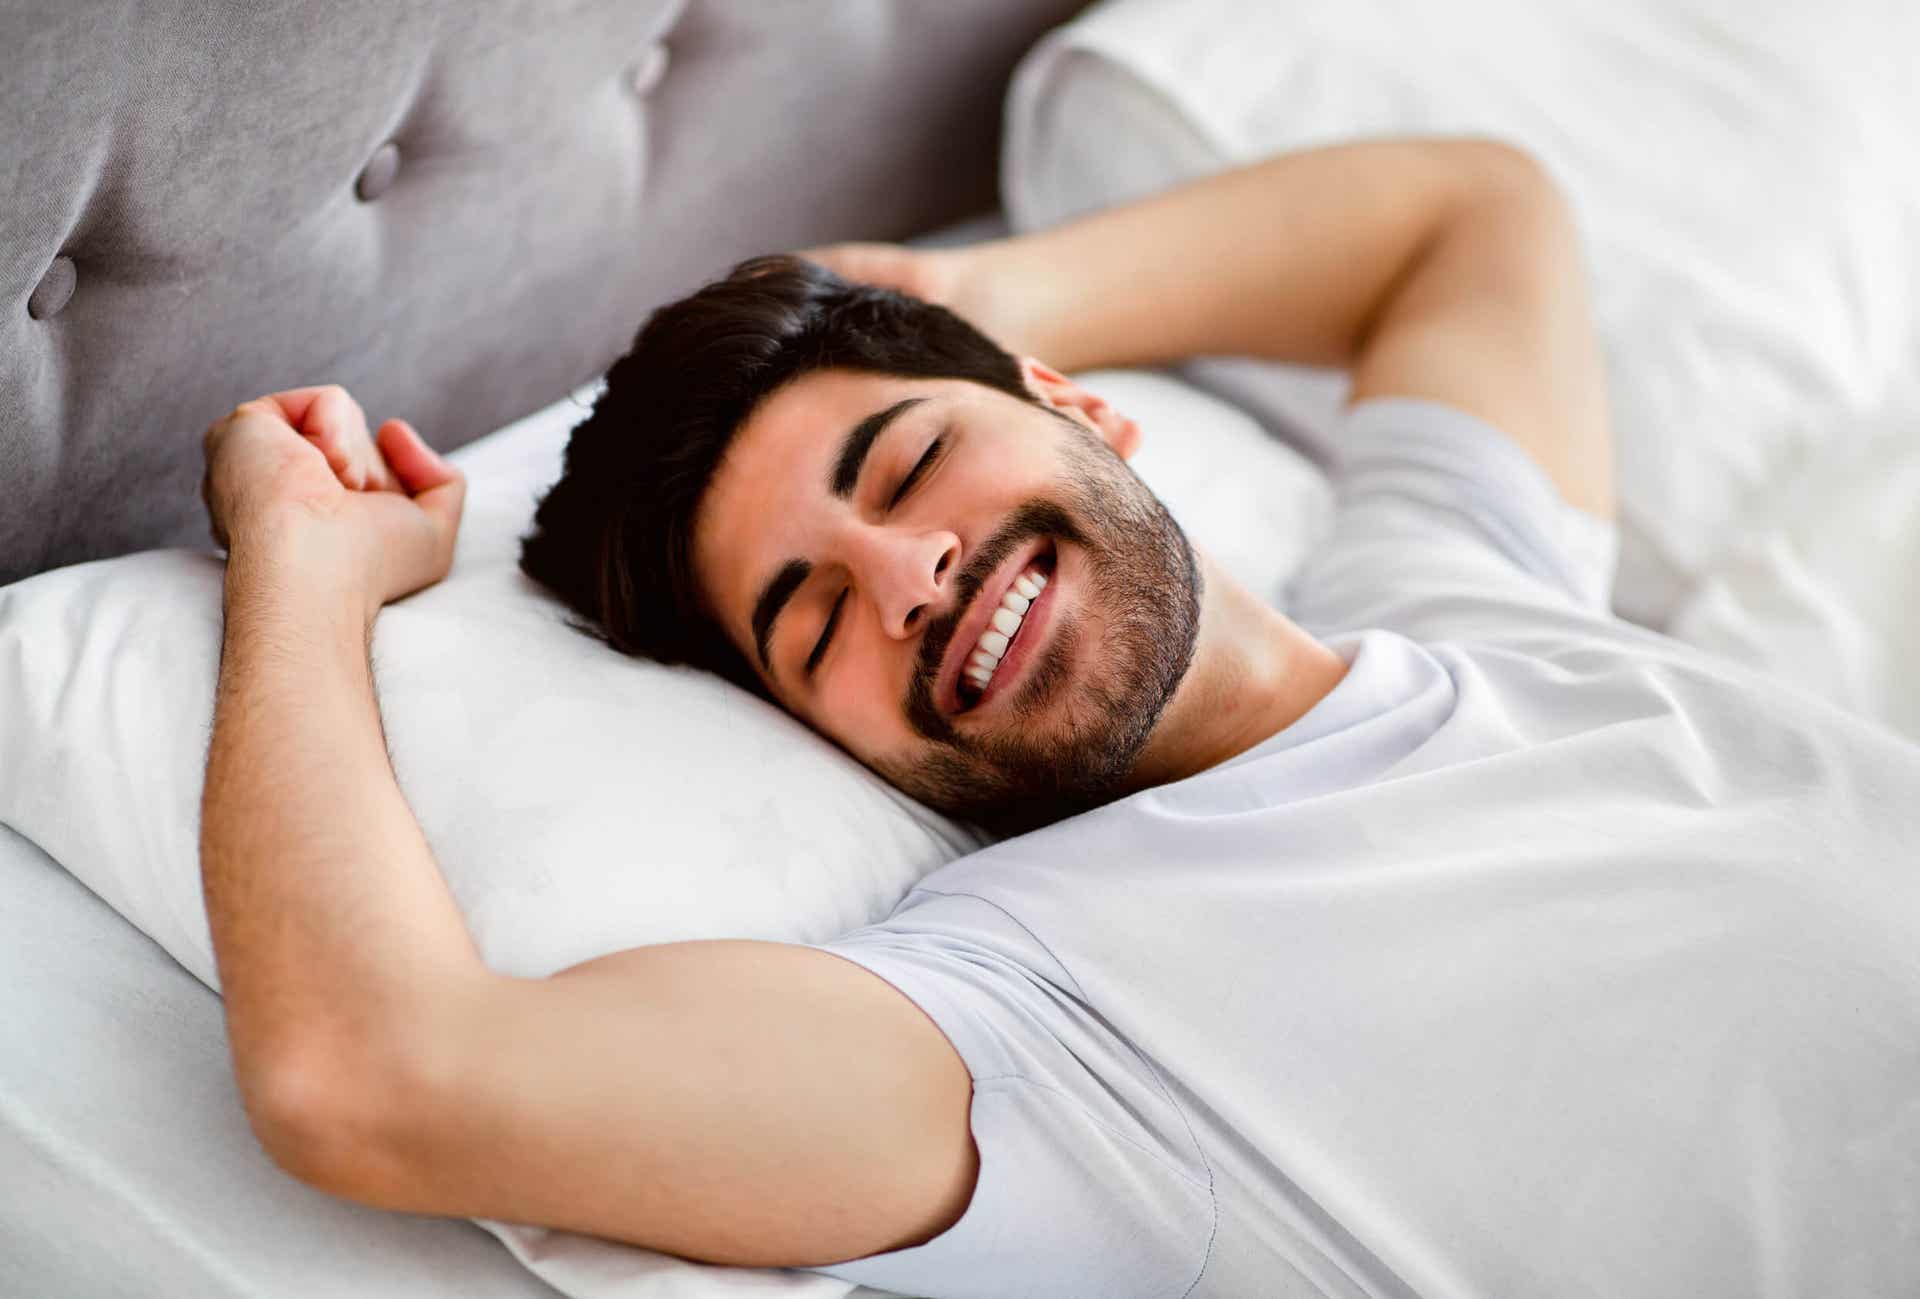 Proteinsynthese - lächelnder Mann im Bett